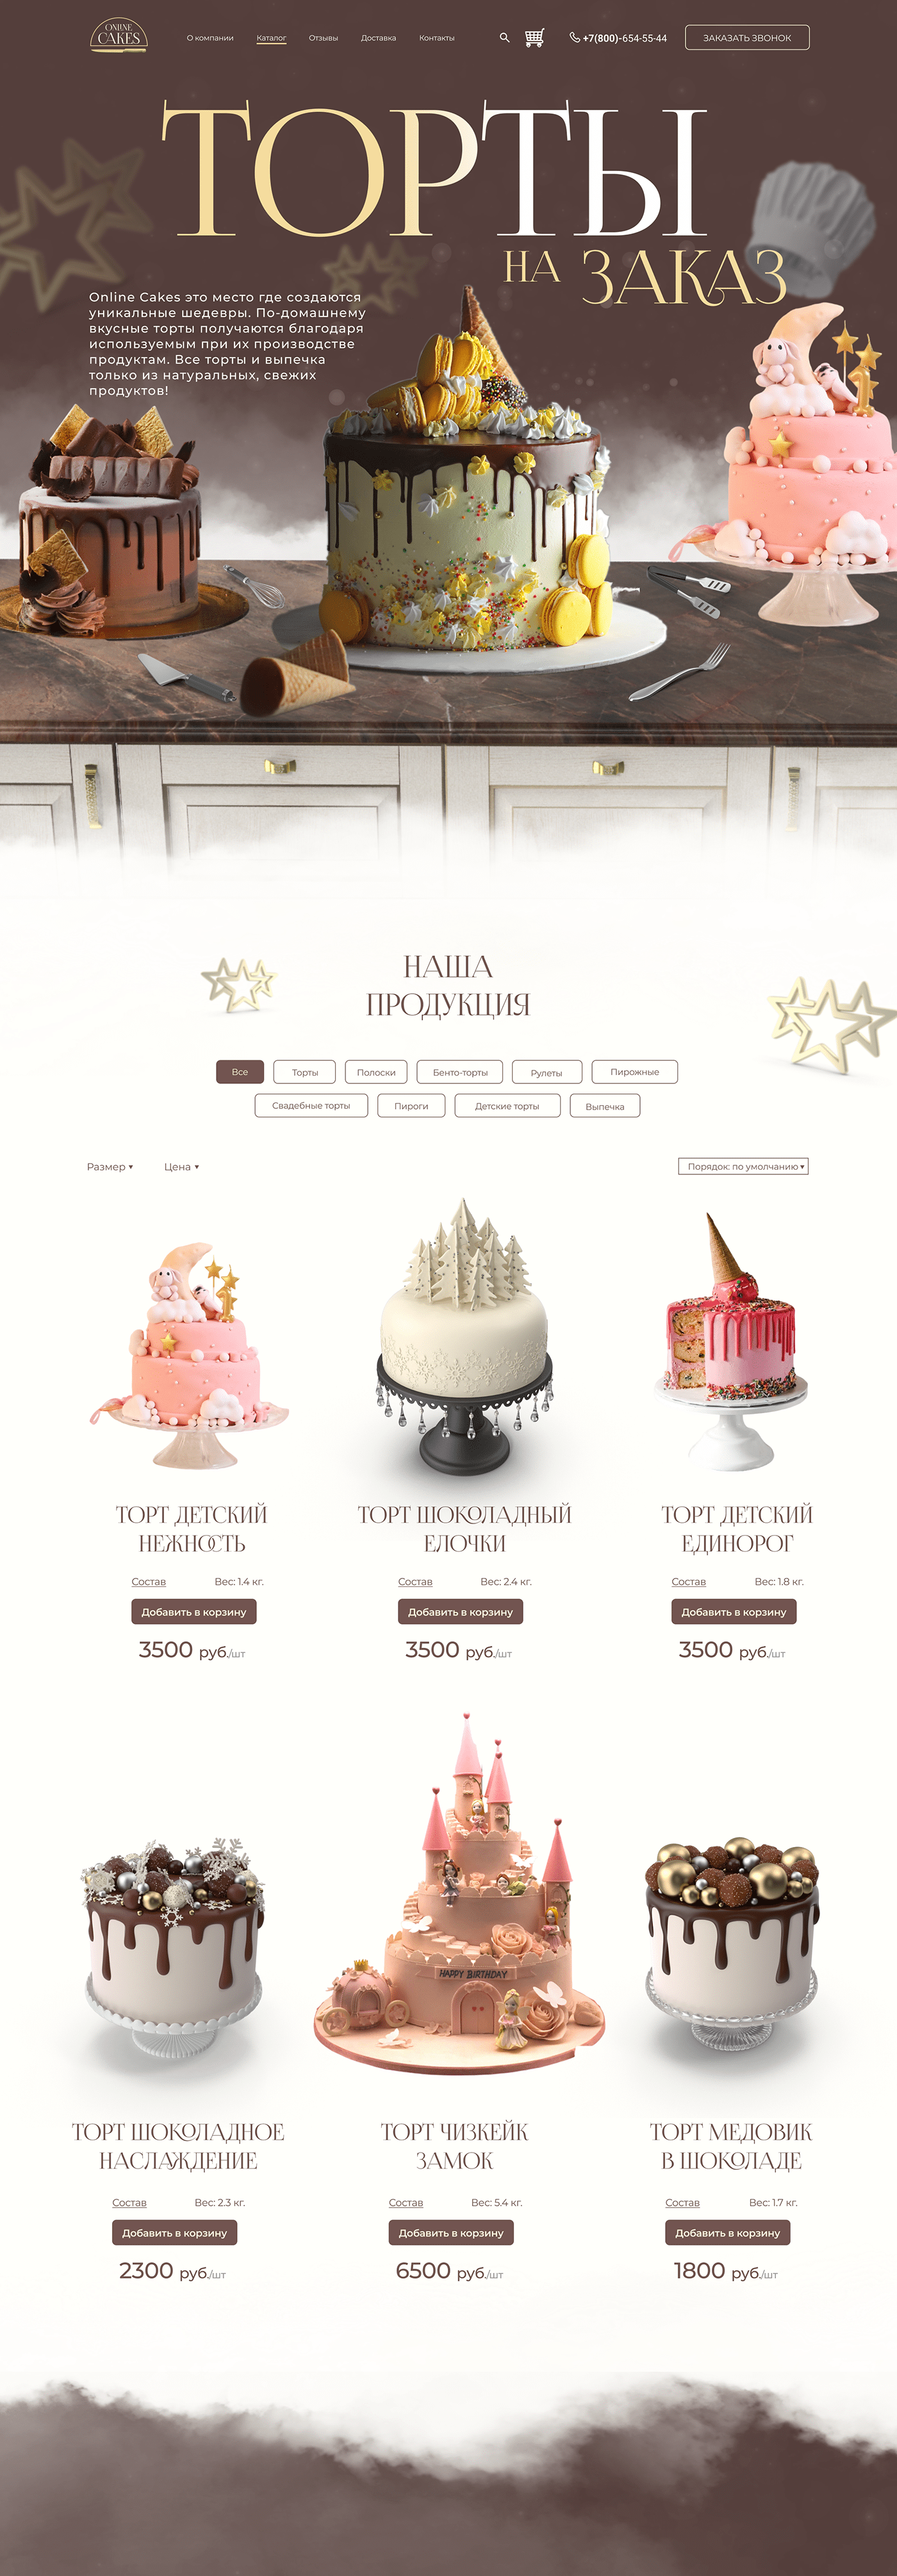 торты кондитерская десерты пирожные сладости еда cake cupcake дизайн сайта торты на заказ